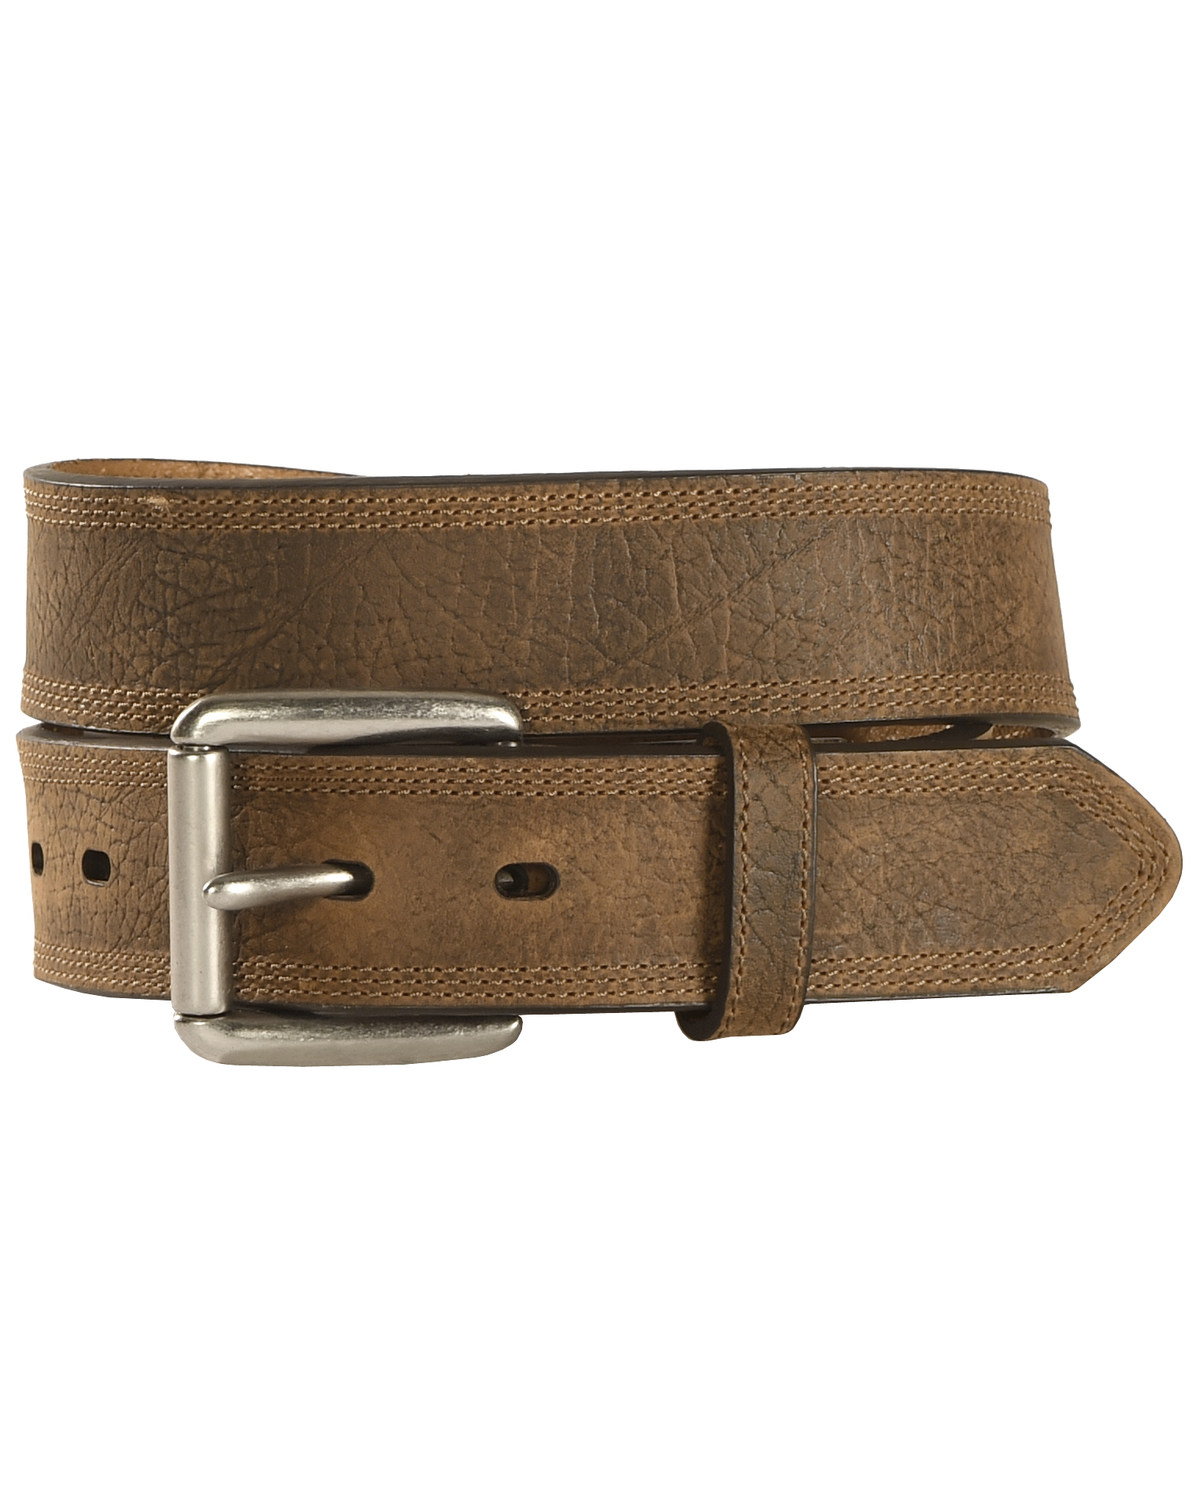 Ariat Men's Aged Bark Basic Leather Belt